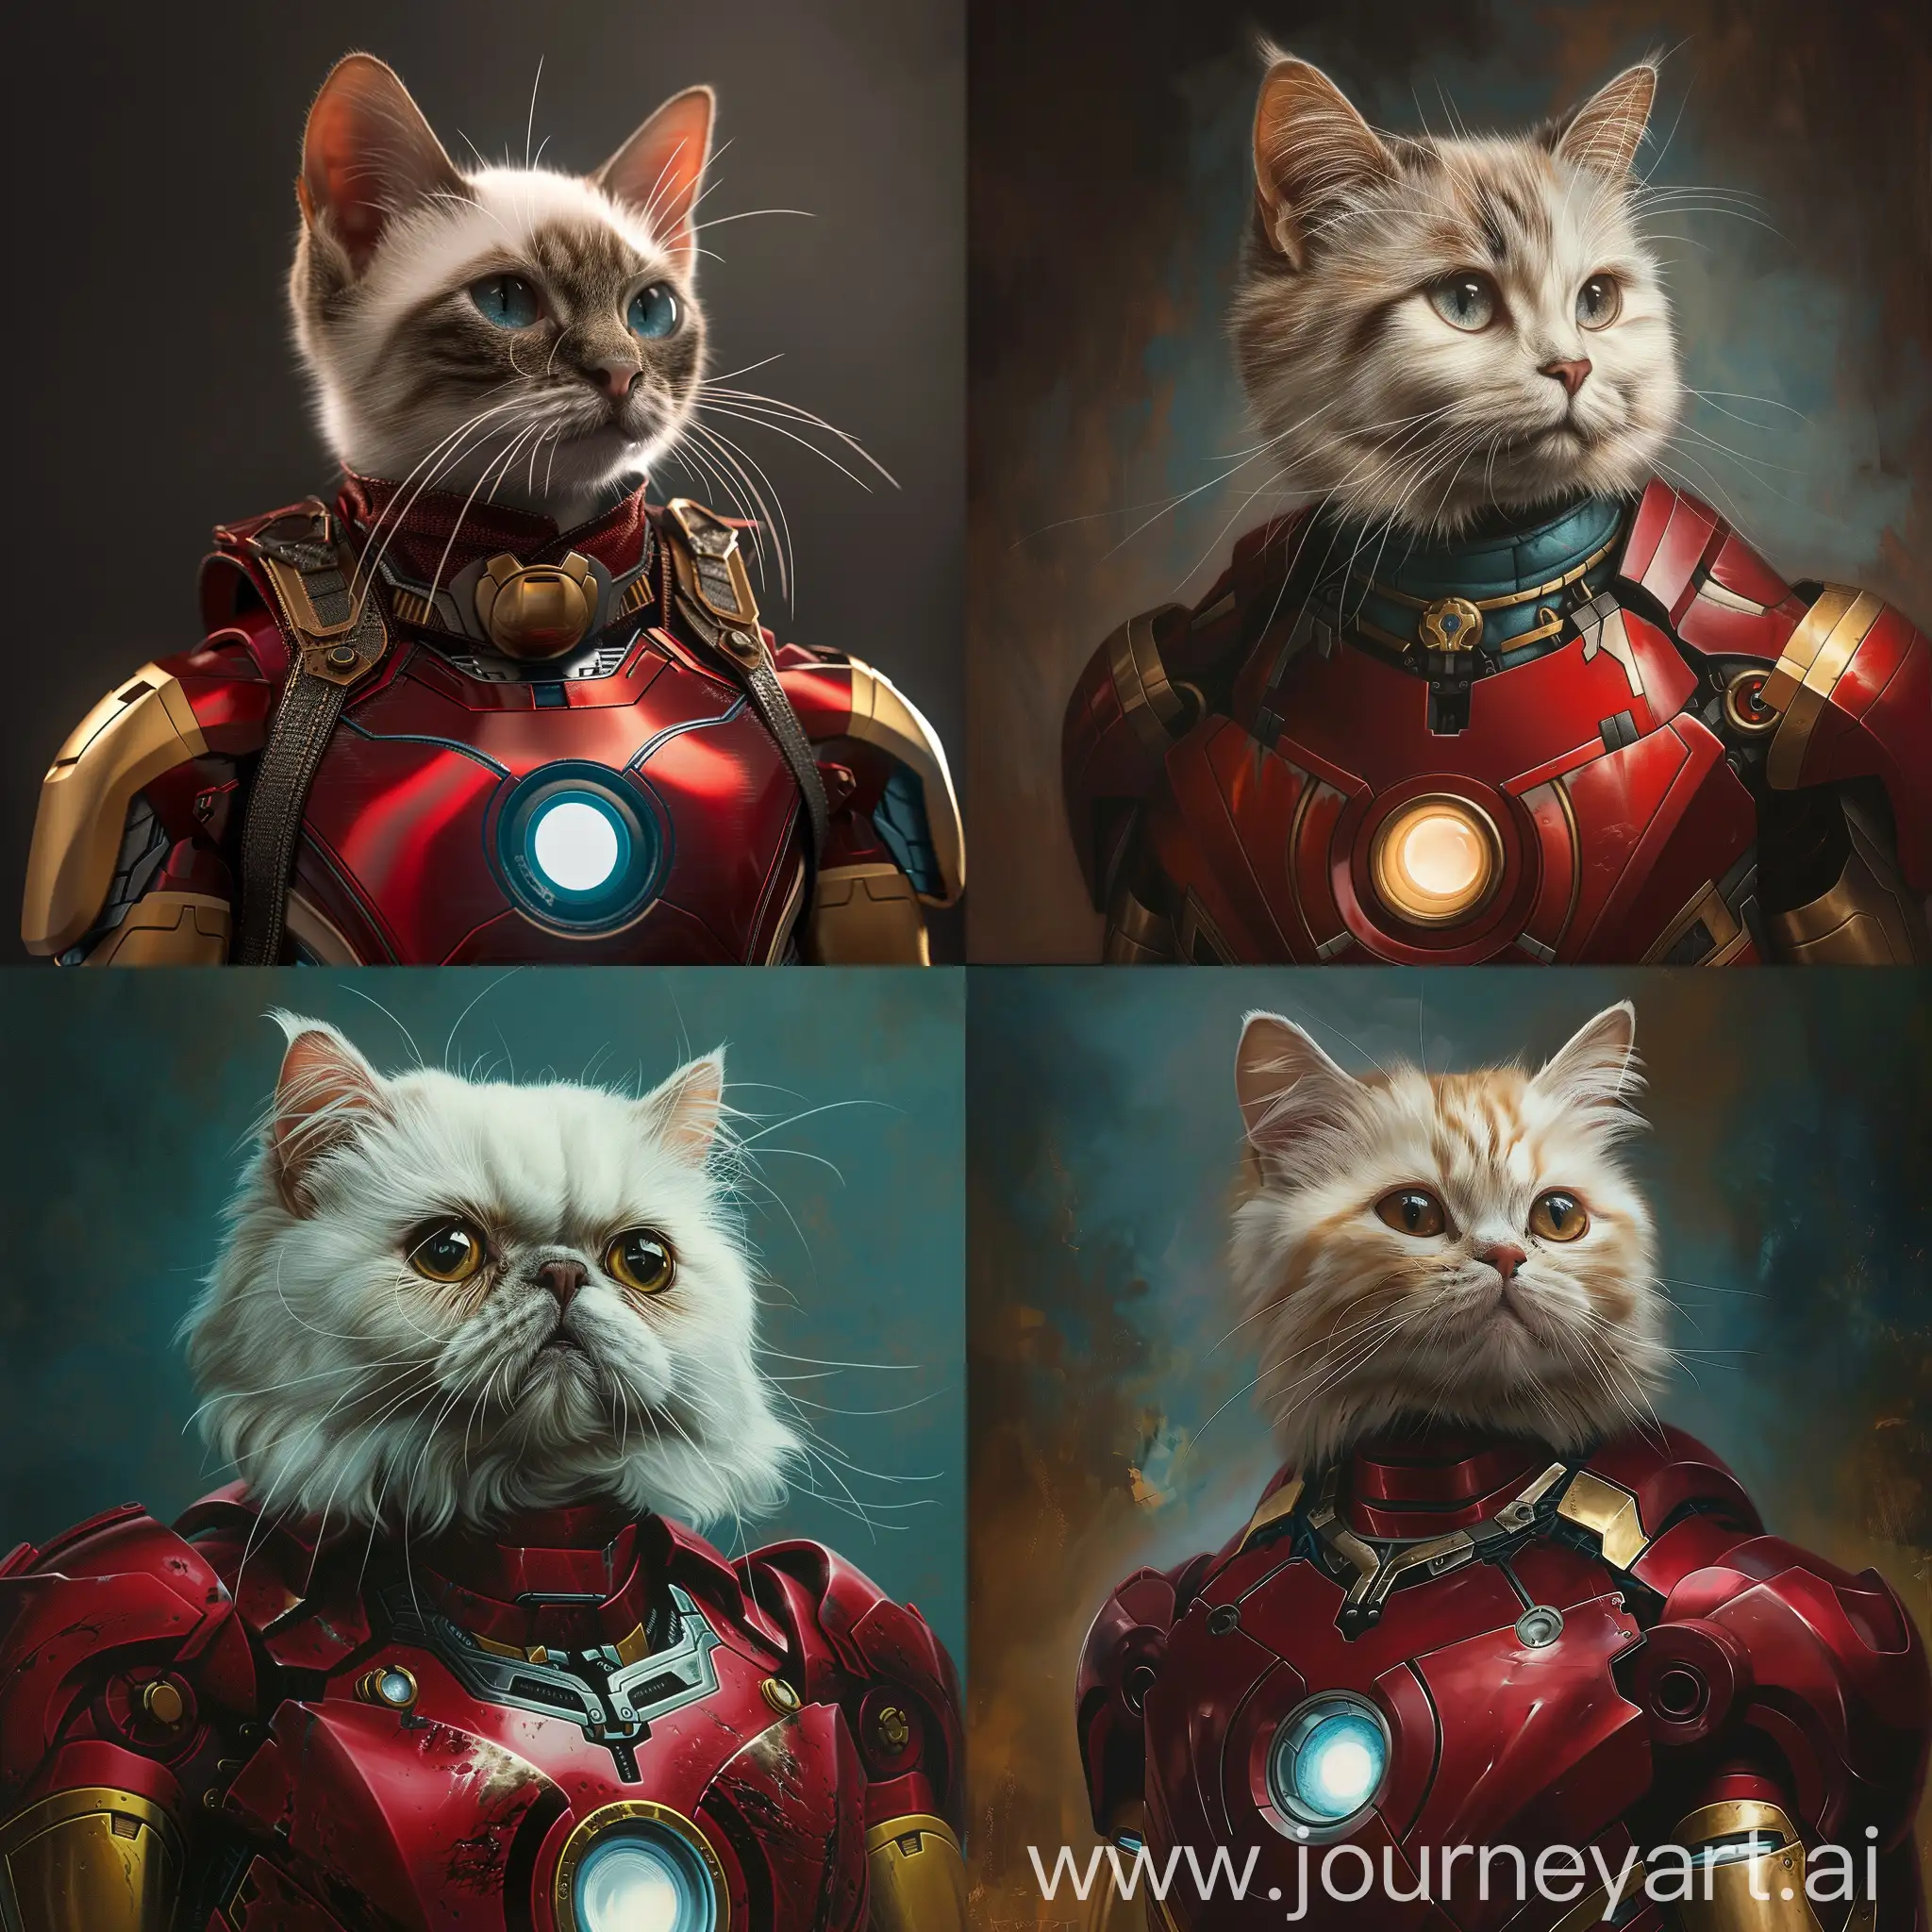 Cat-in-Iron-Man-Suit-Hyperrealism-Art